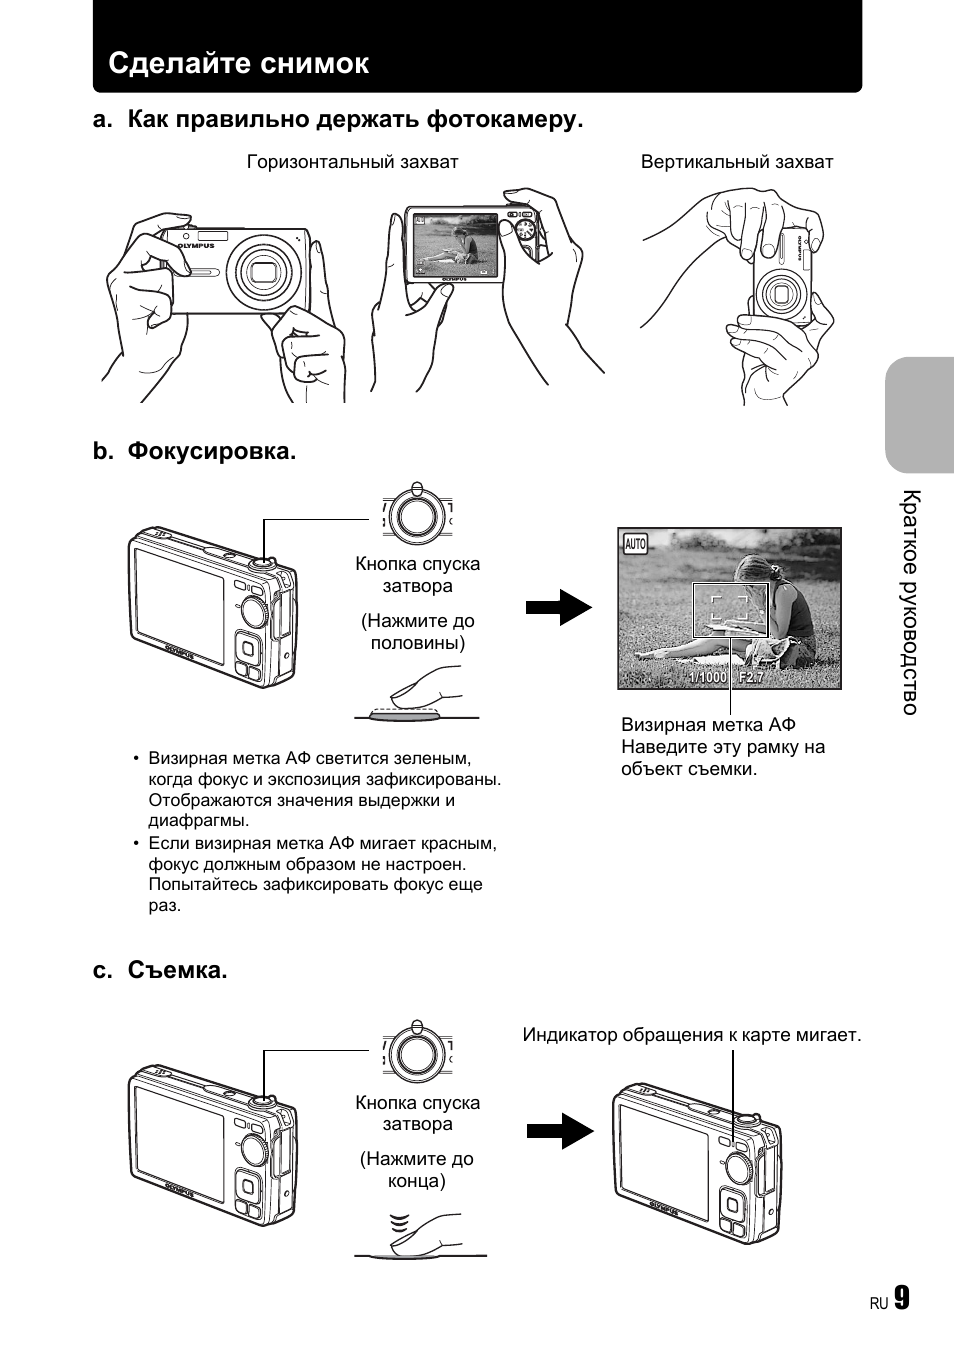 Как посмотреть фото на фотоаппарате олимпус